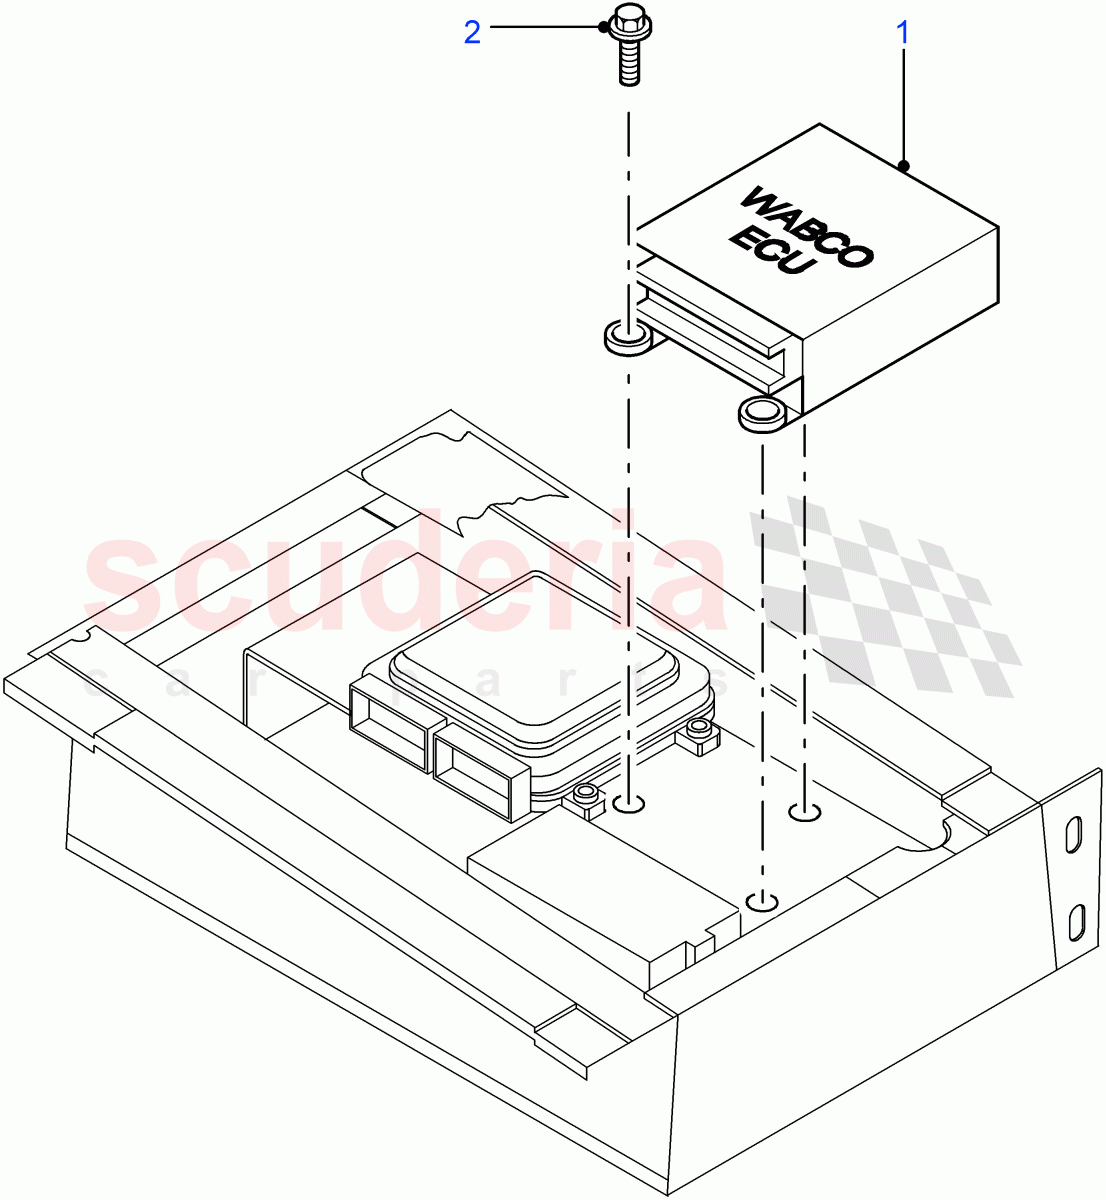 ECU-Anti-Lock Braking System(4 Wheel Anti-Lock Braking System)((V)FROM7A000001) of Land Rover Land Rover Defender (2007-2016)